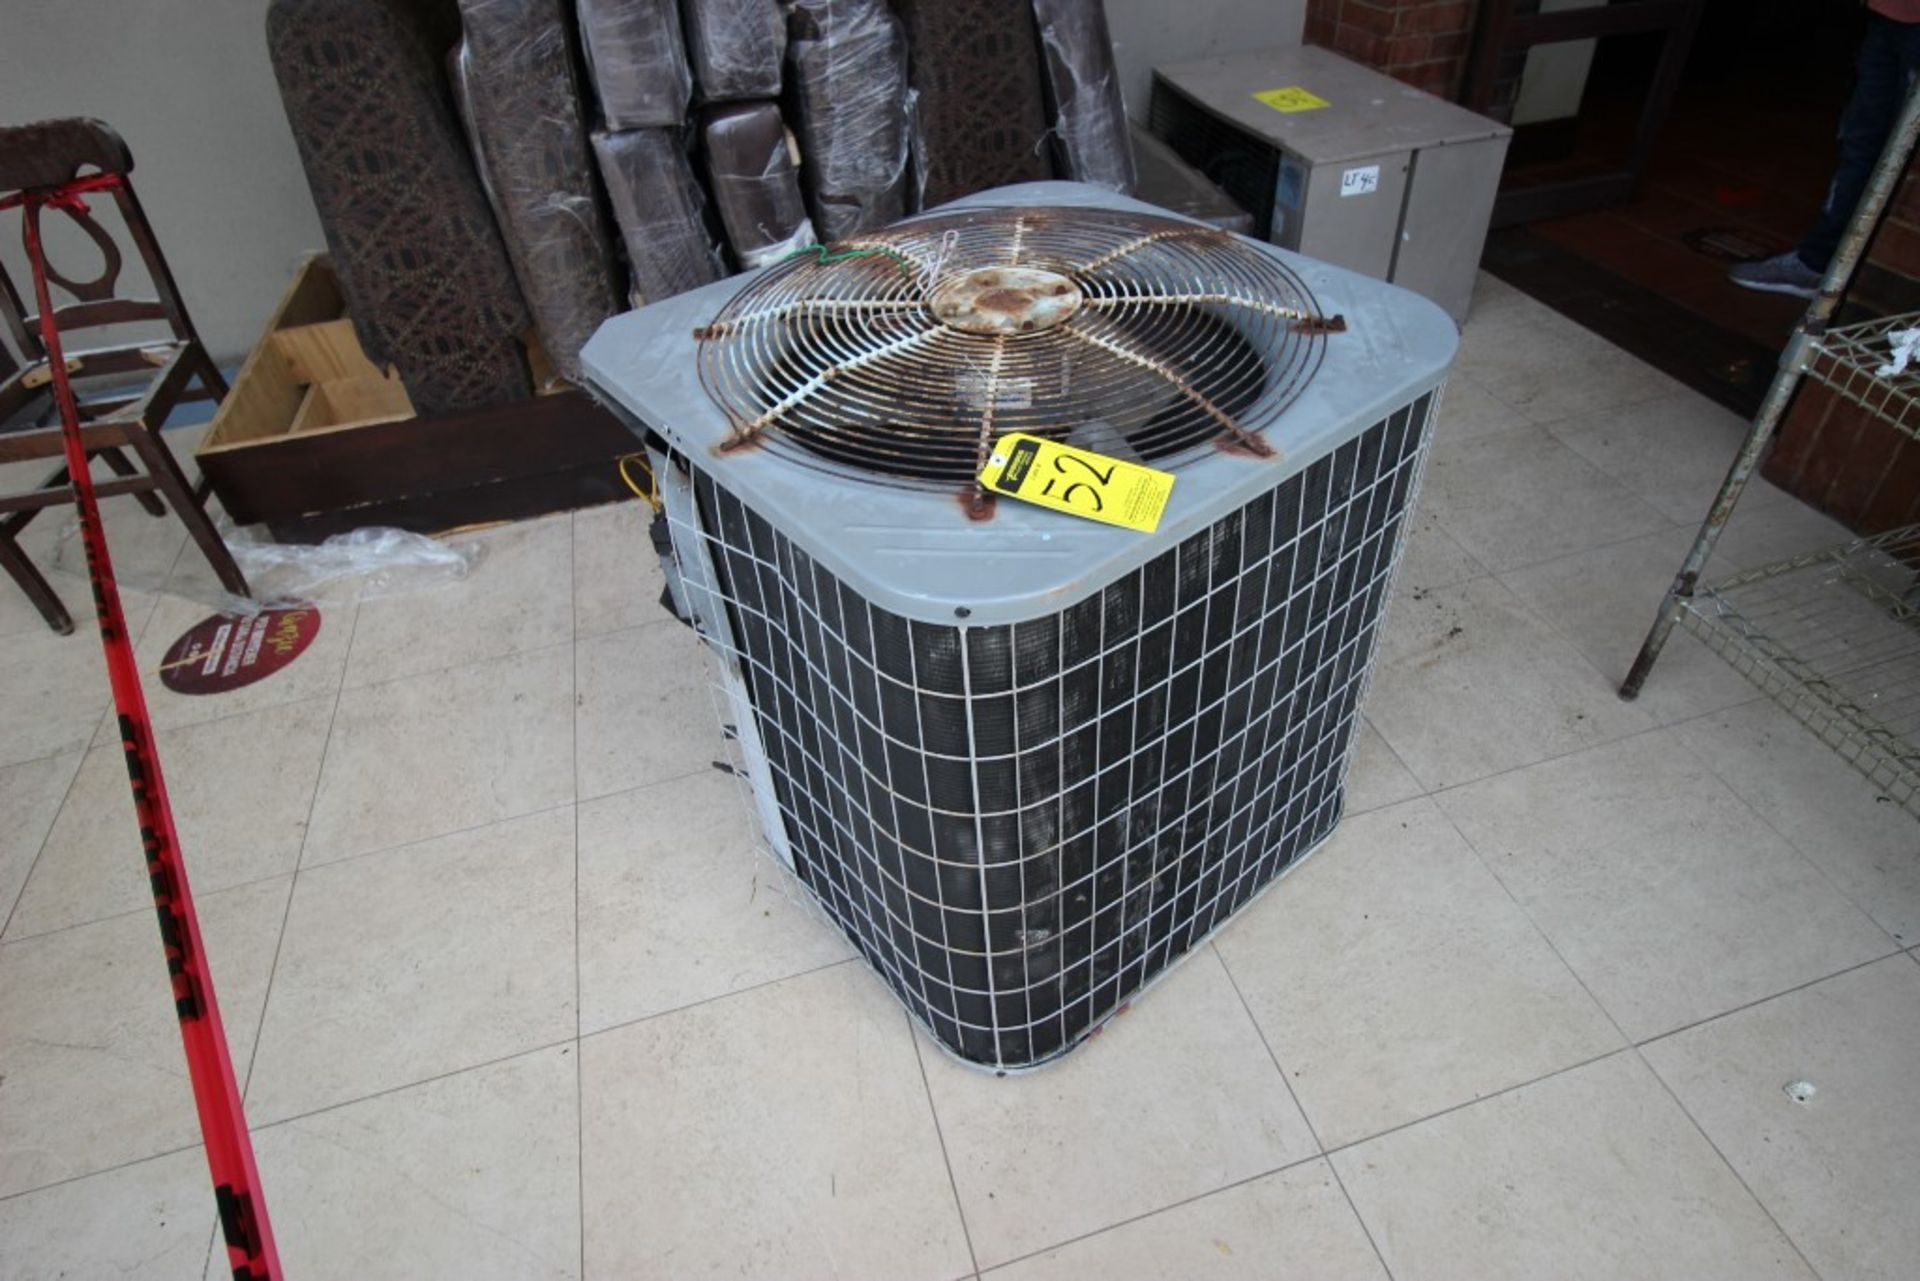 3 Unidades Condensadoras para aire acondicionado de un ventilador marca York, modelo:YCJD36S41S1A, - Image 6 of 19